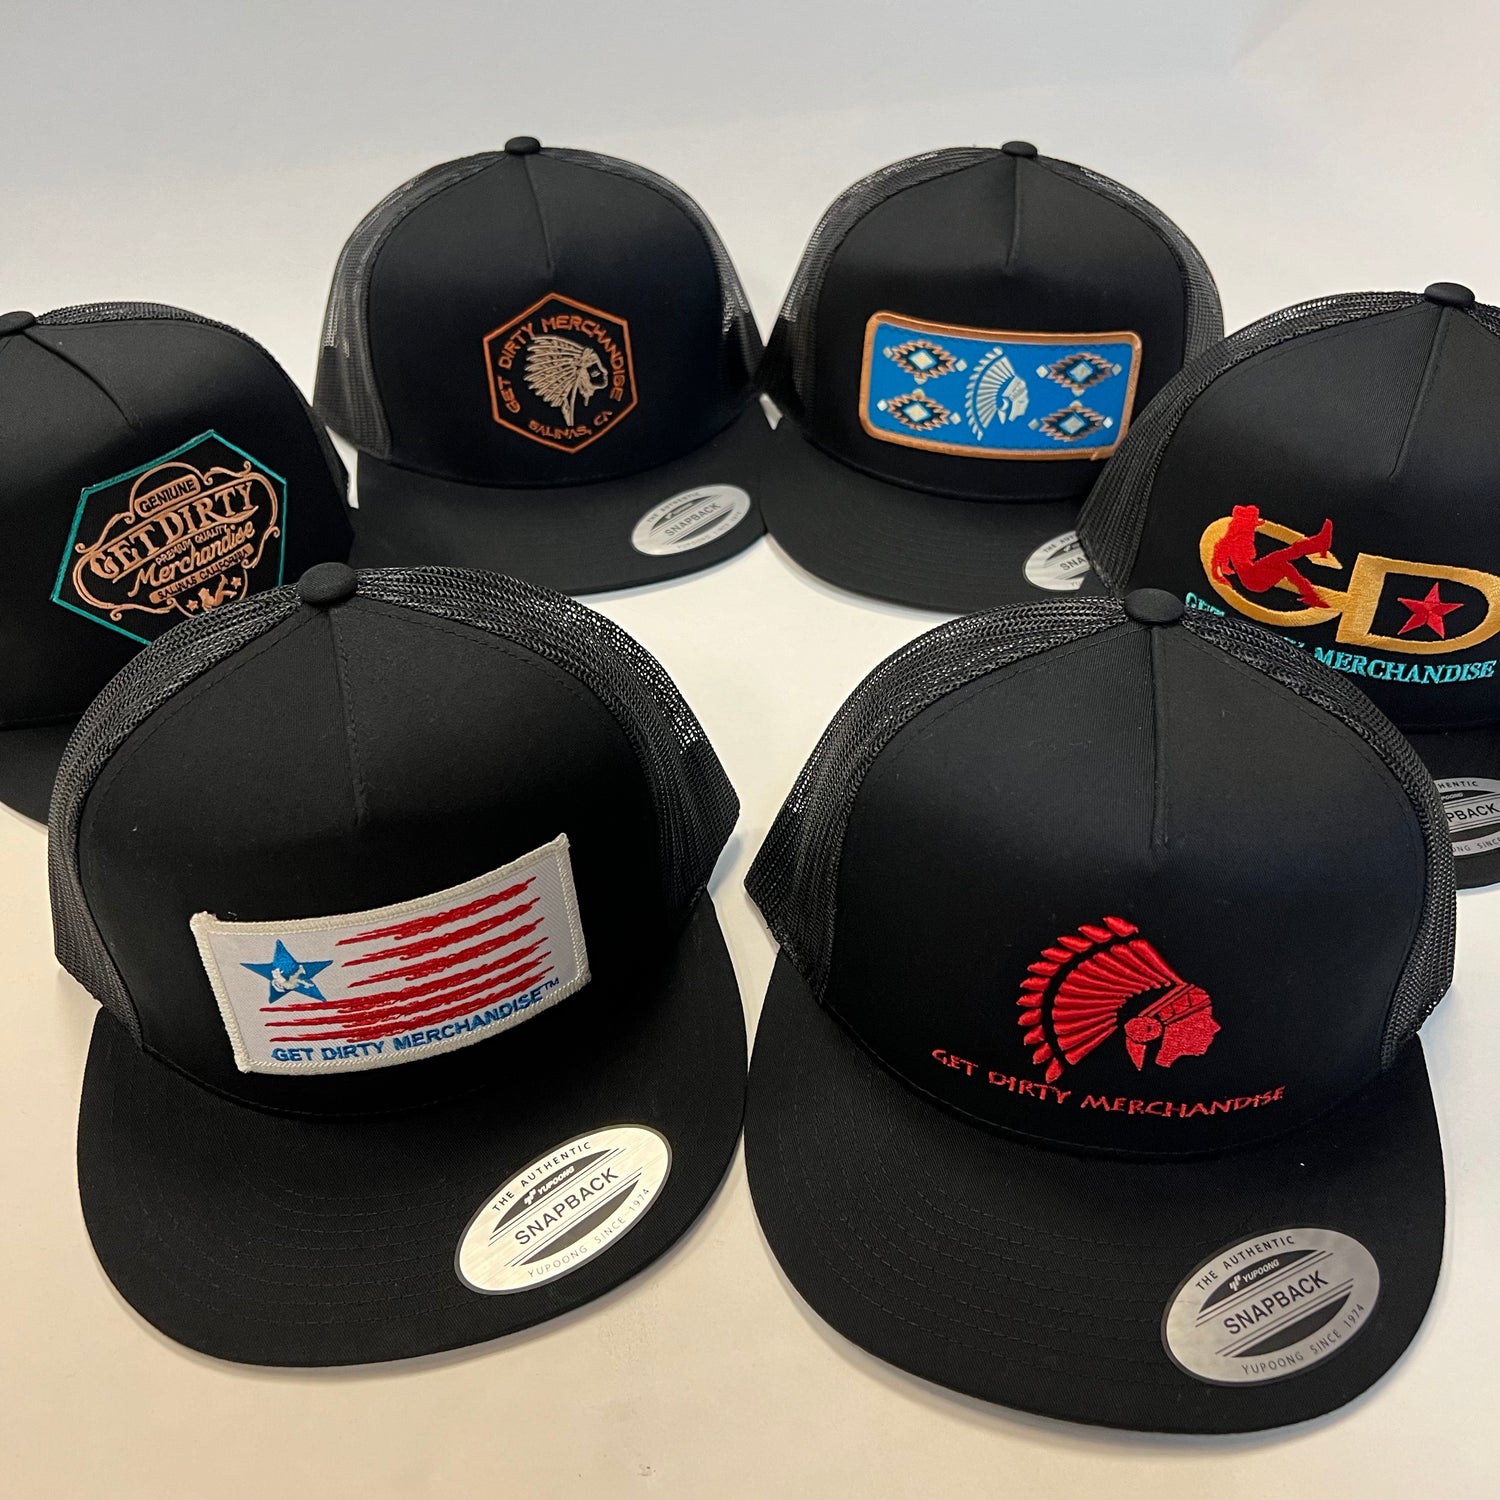 Get Dirty Merchandise Caps